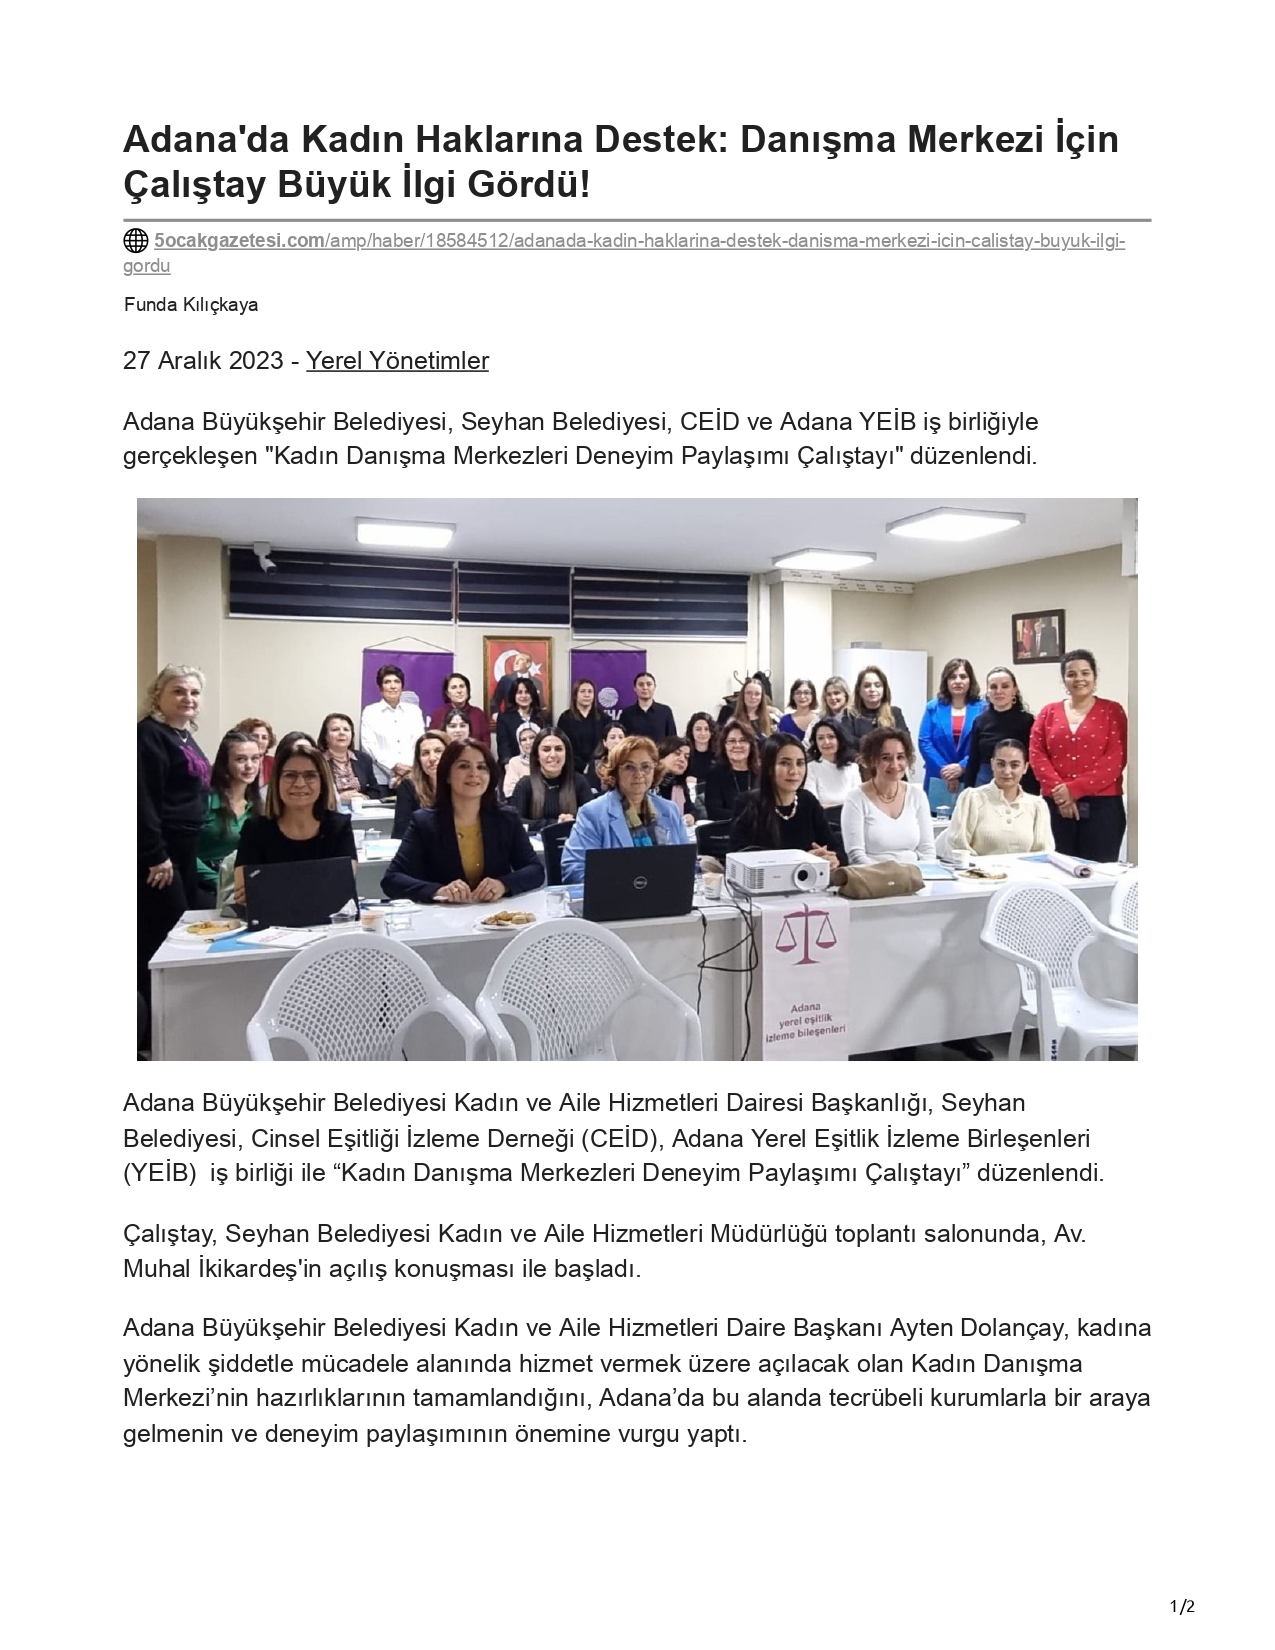 5 Ocak Gazetesi: Adana'da Kadın Haklarına Destek 